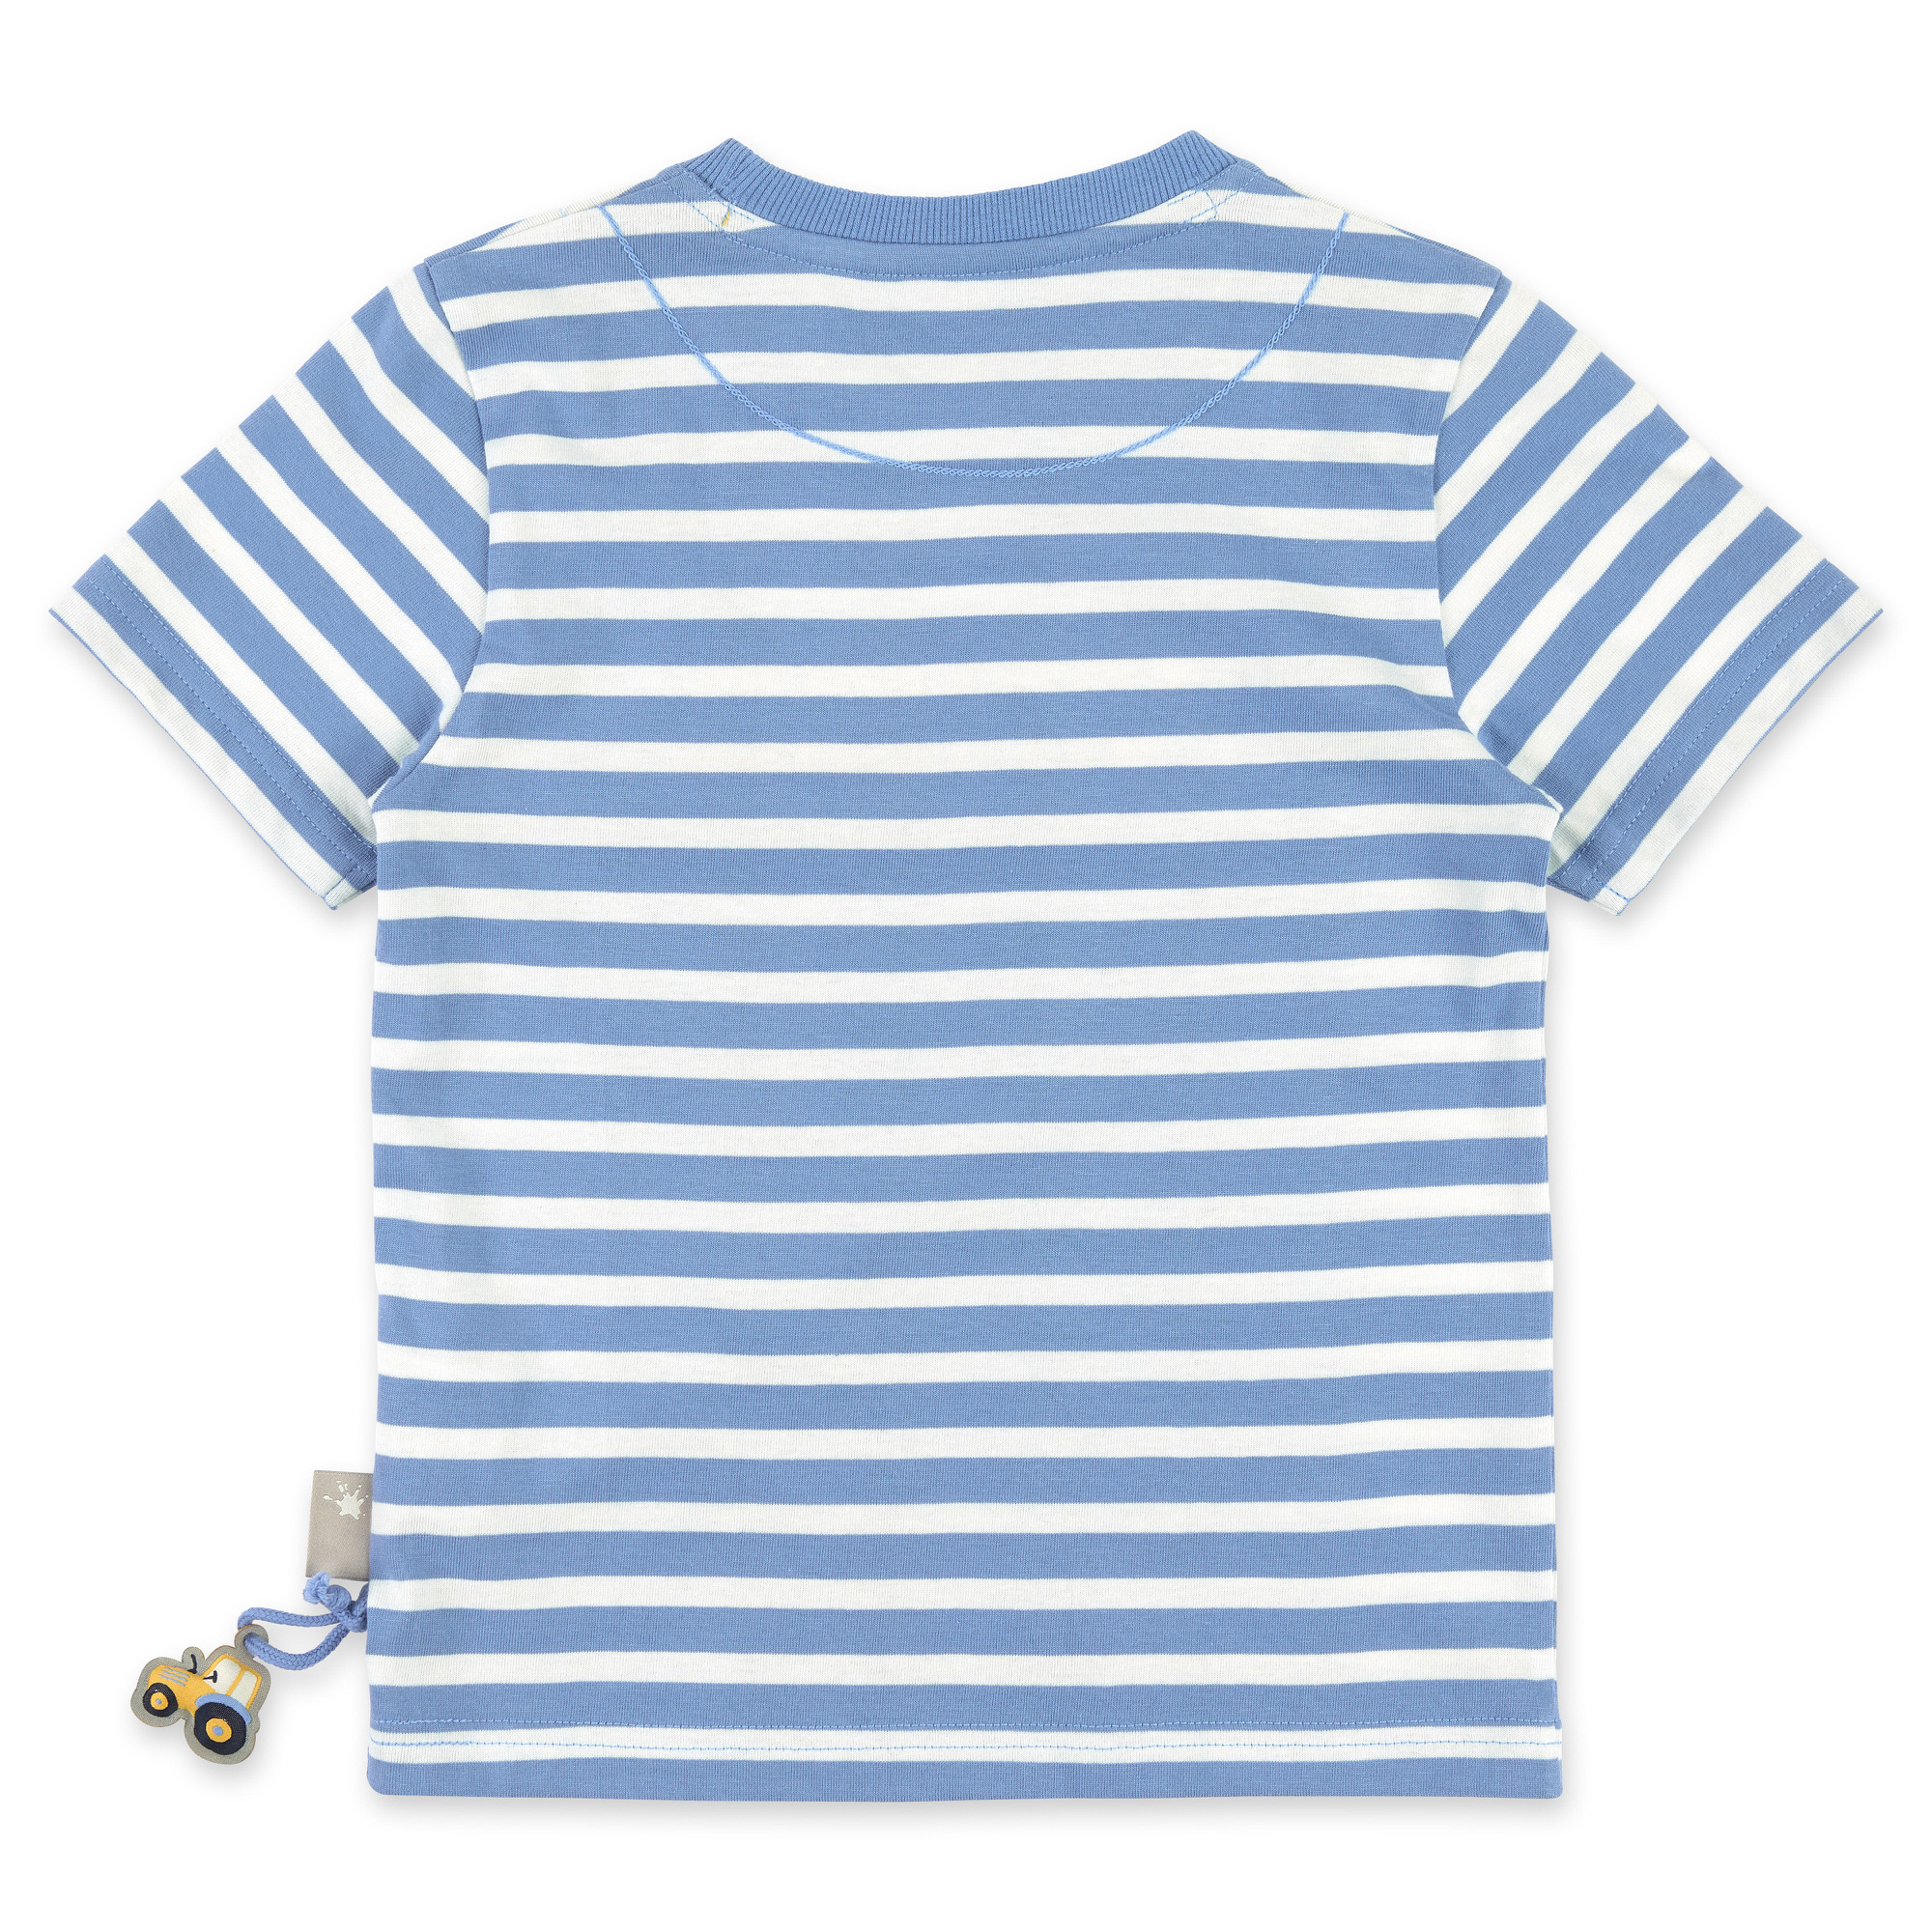 Children's T-shirt blue/white striped